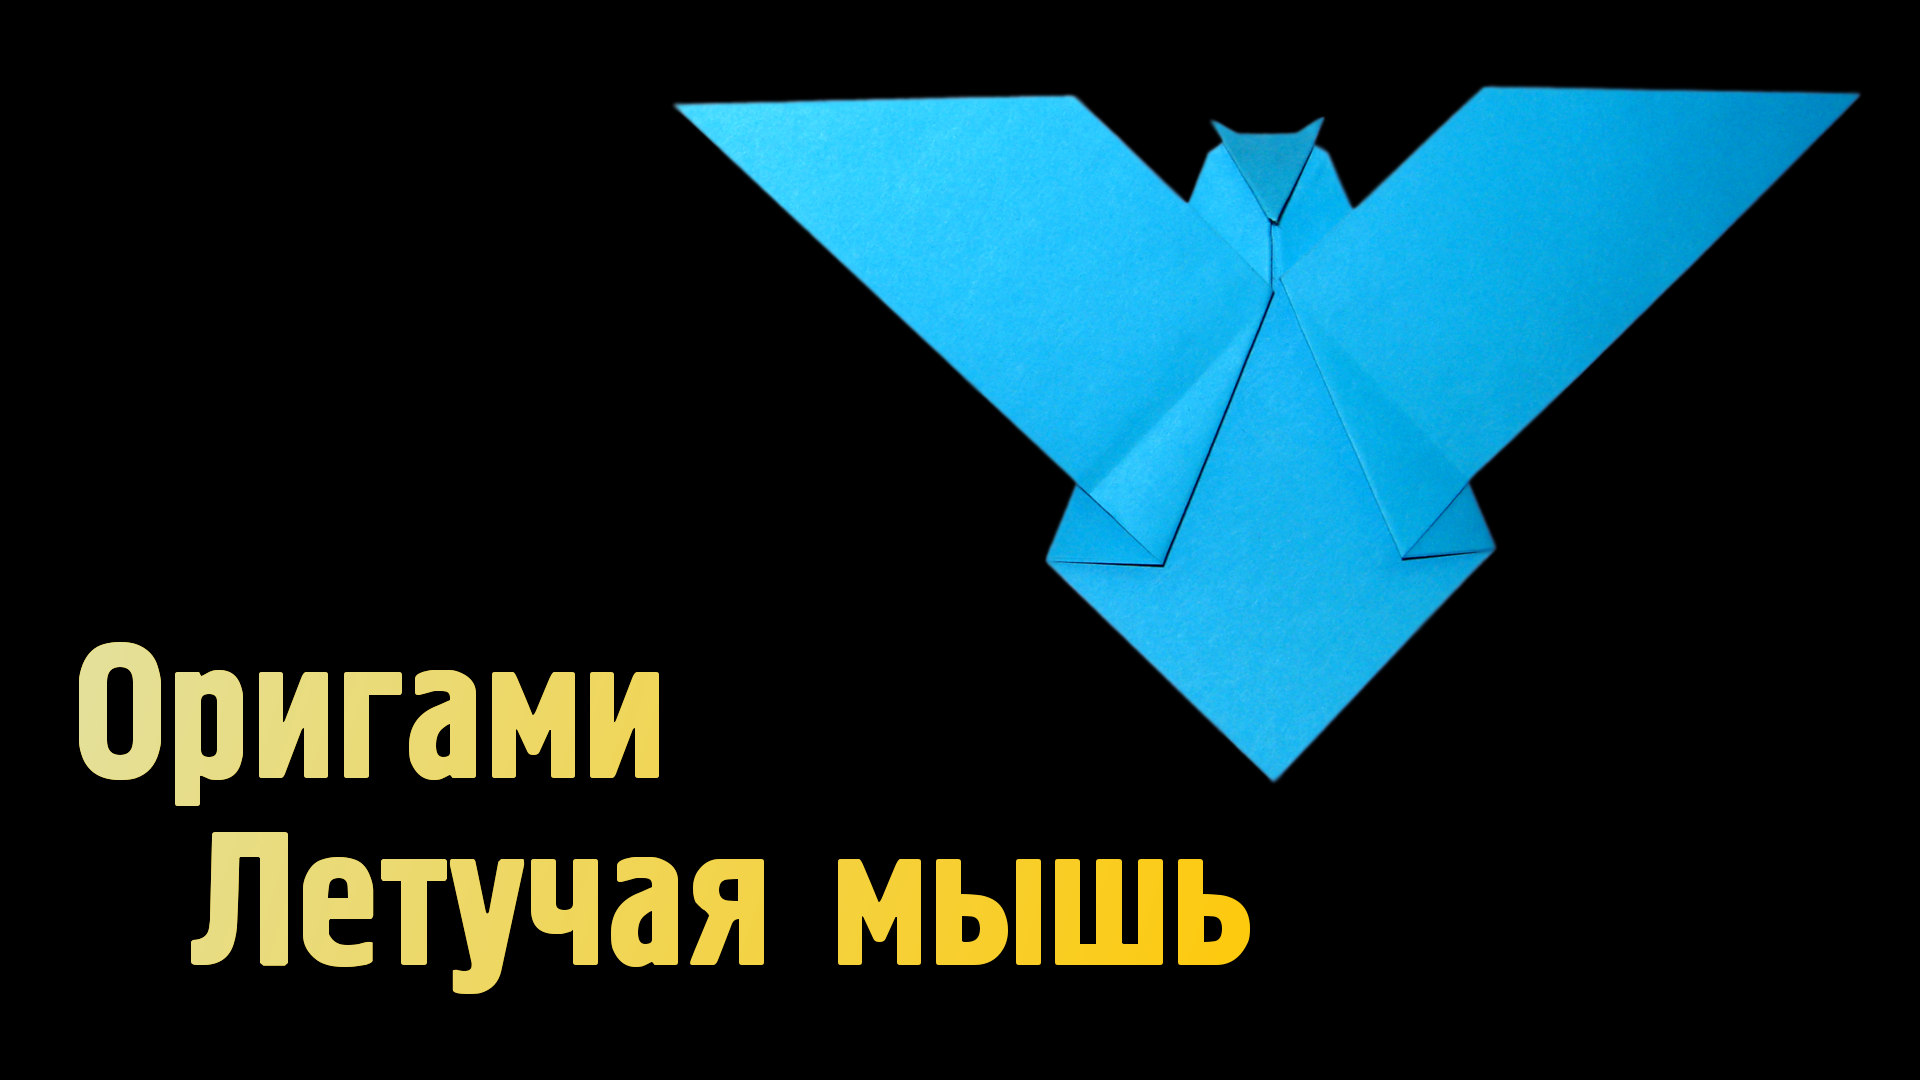 Как сделать Летучую Мышь из бумаги | Оригами Летучая Мышь своими руками | Фигурка Животного без клея